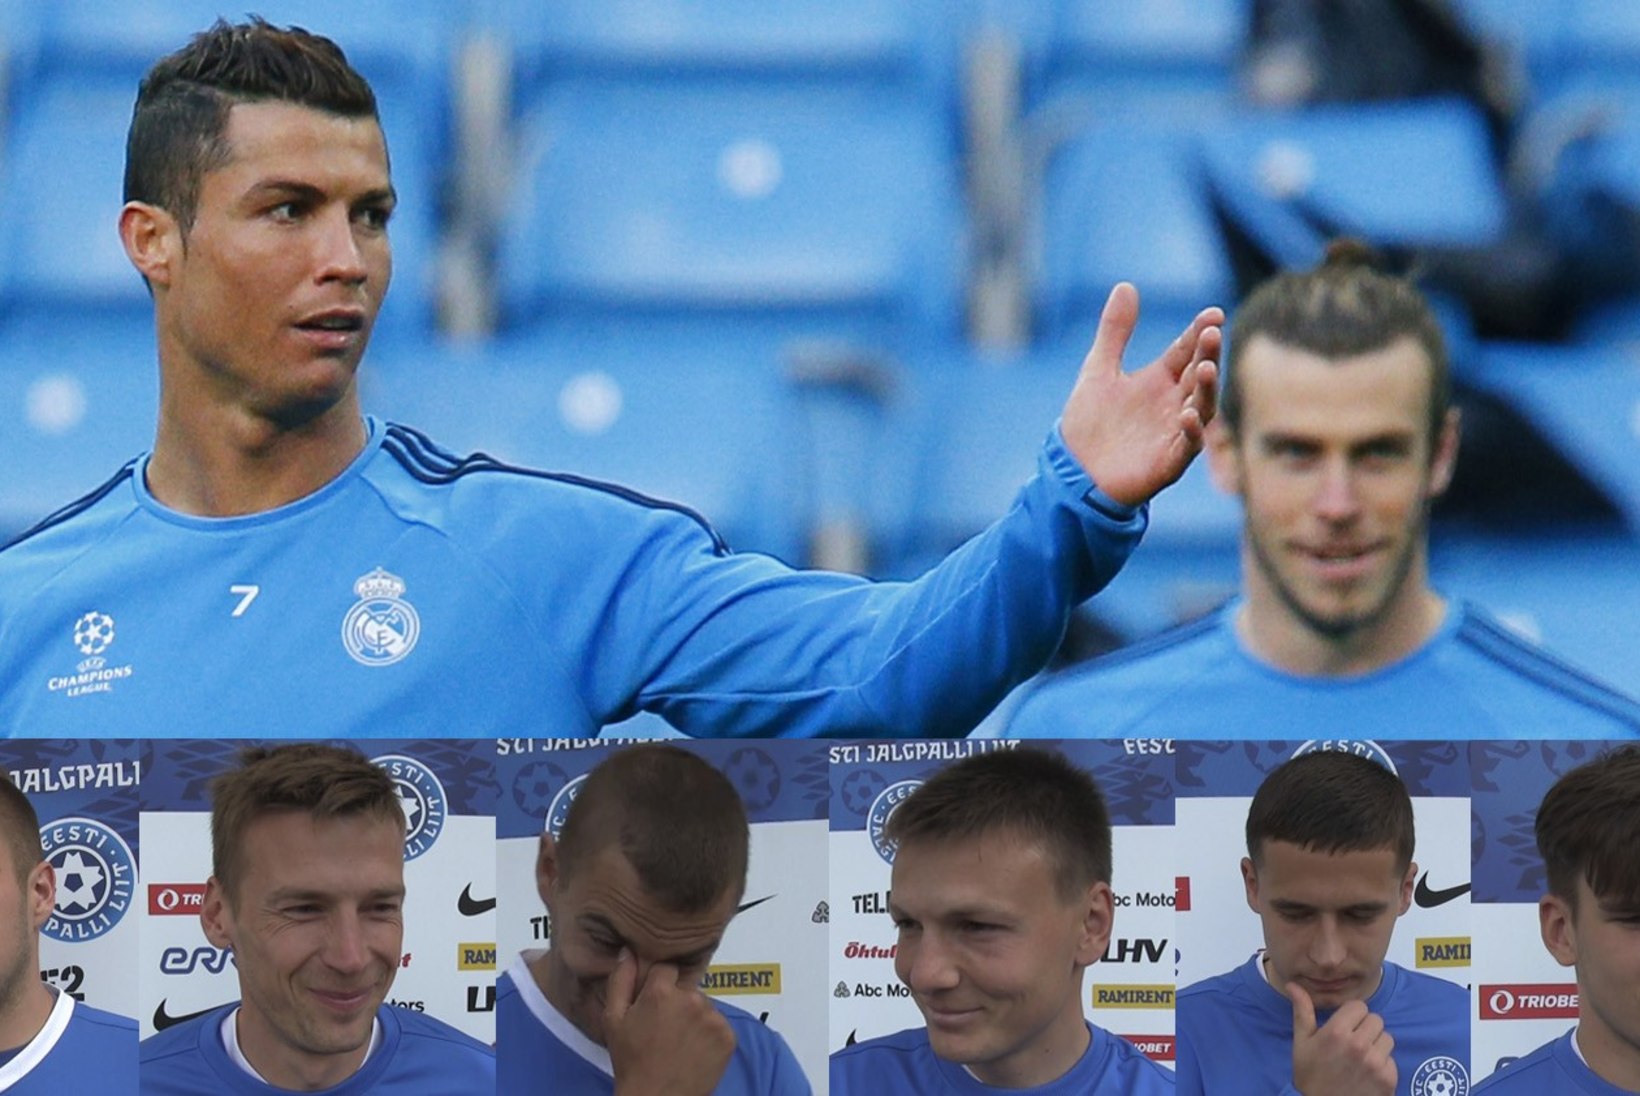 ÕHTULEHE VIDEO | 1 küsimus jalgpallikoondisele: kes võidaks poksimatši Cristiano Ronaldo ja Gareth Bale'i vahel?